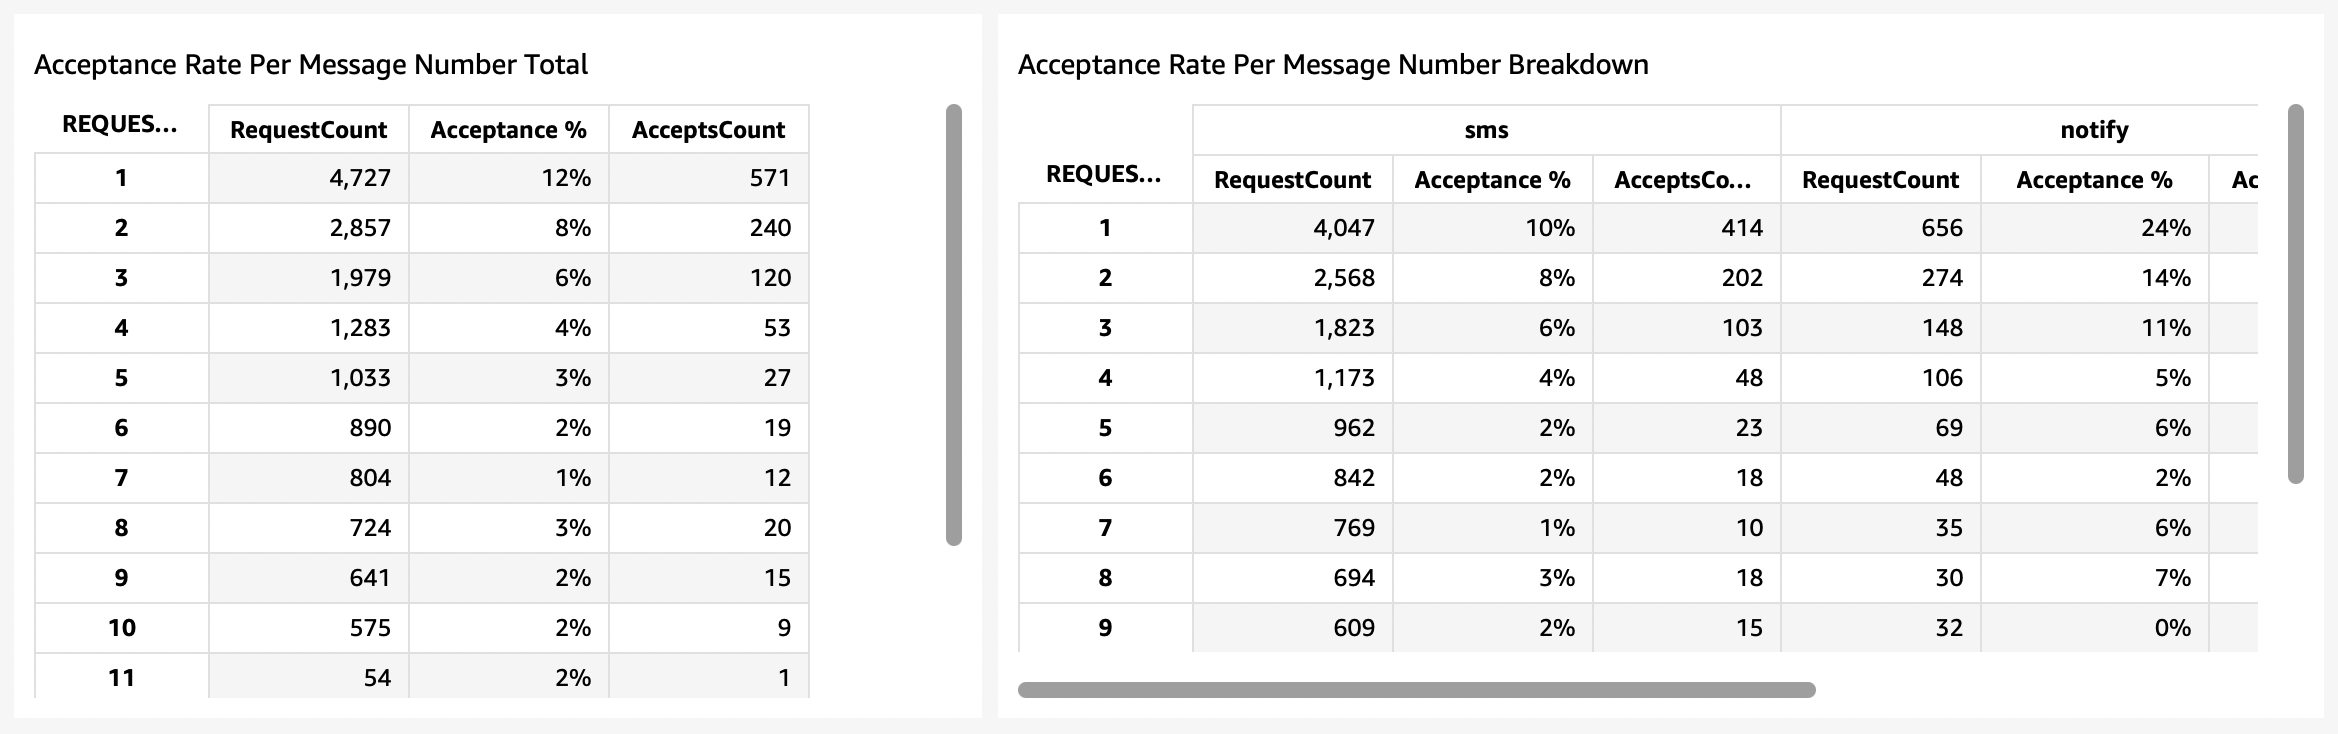 Acceptance rates per message